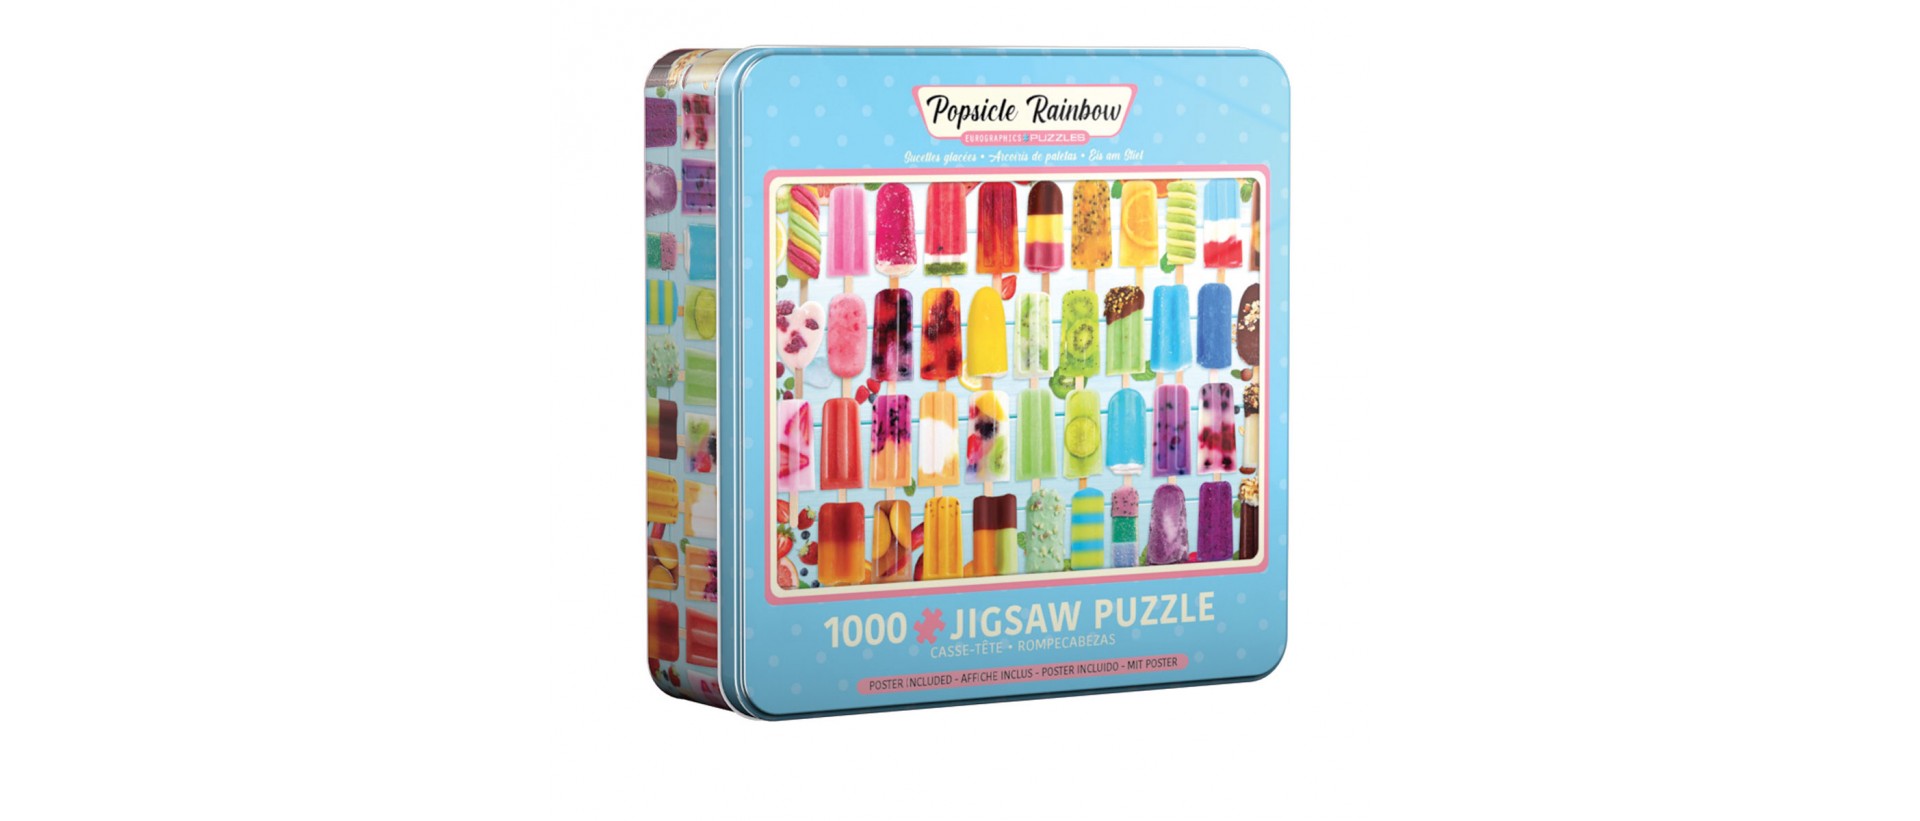 Popsicle Rainbow - Puzzle Eurographics 8051-5622